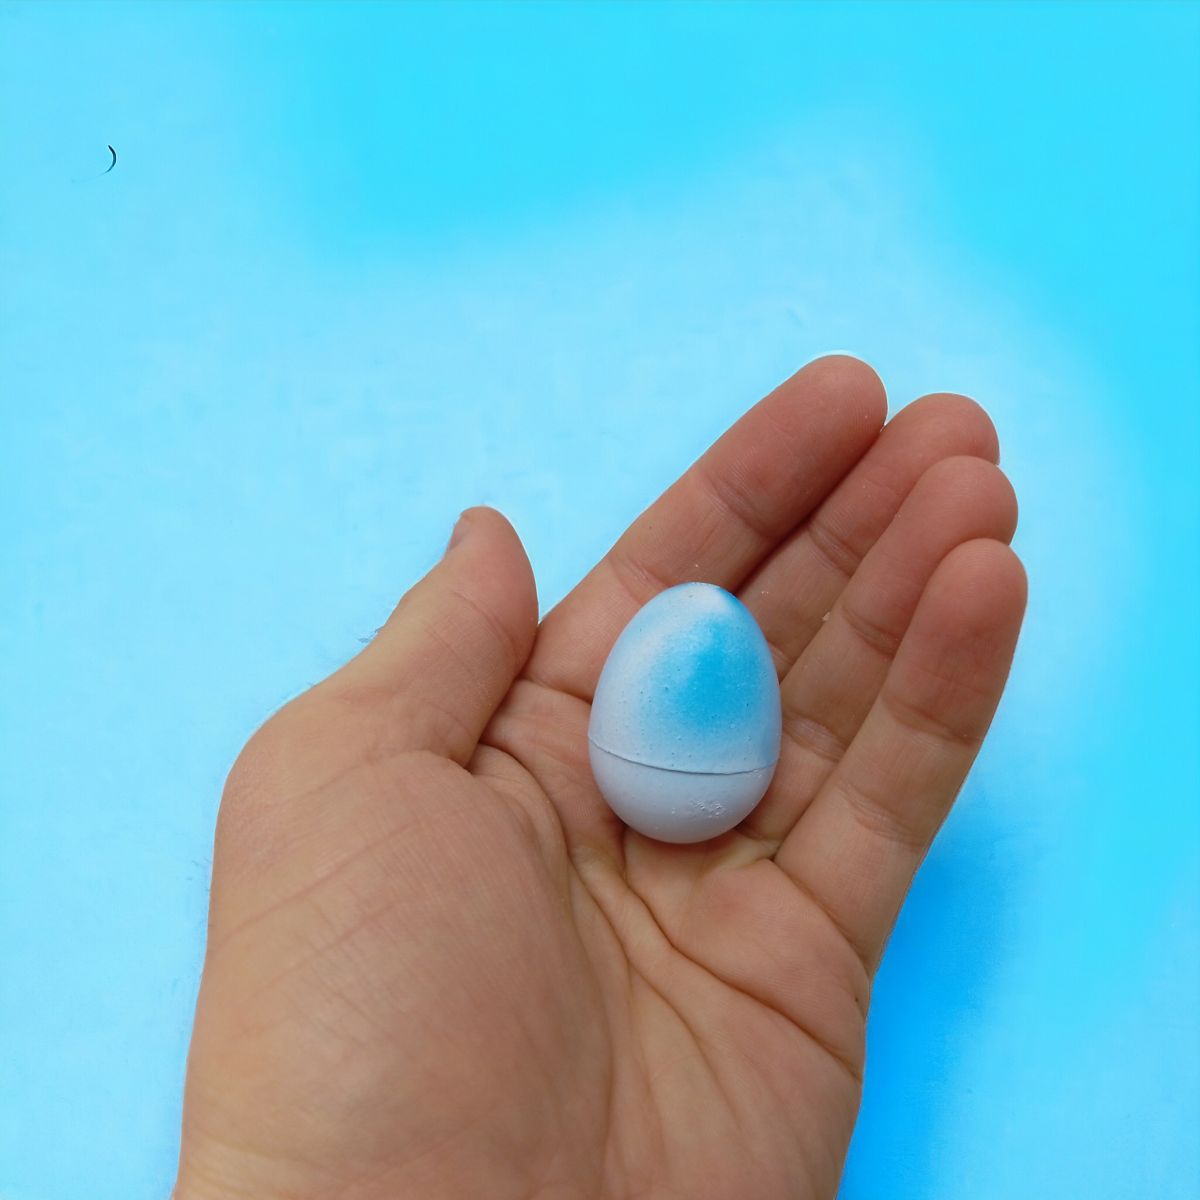 Маленькі зростайки "Єдинороги" 4 кольори, в яйці, 4 см, 48 штук